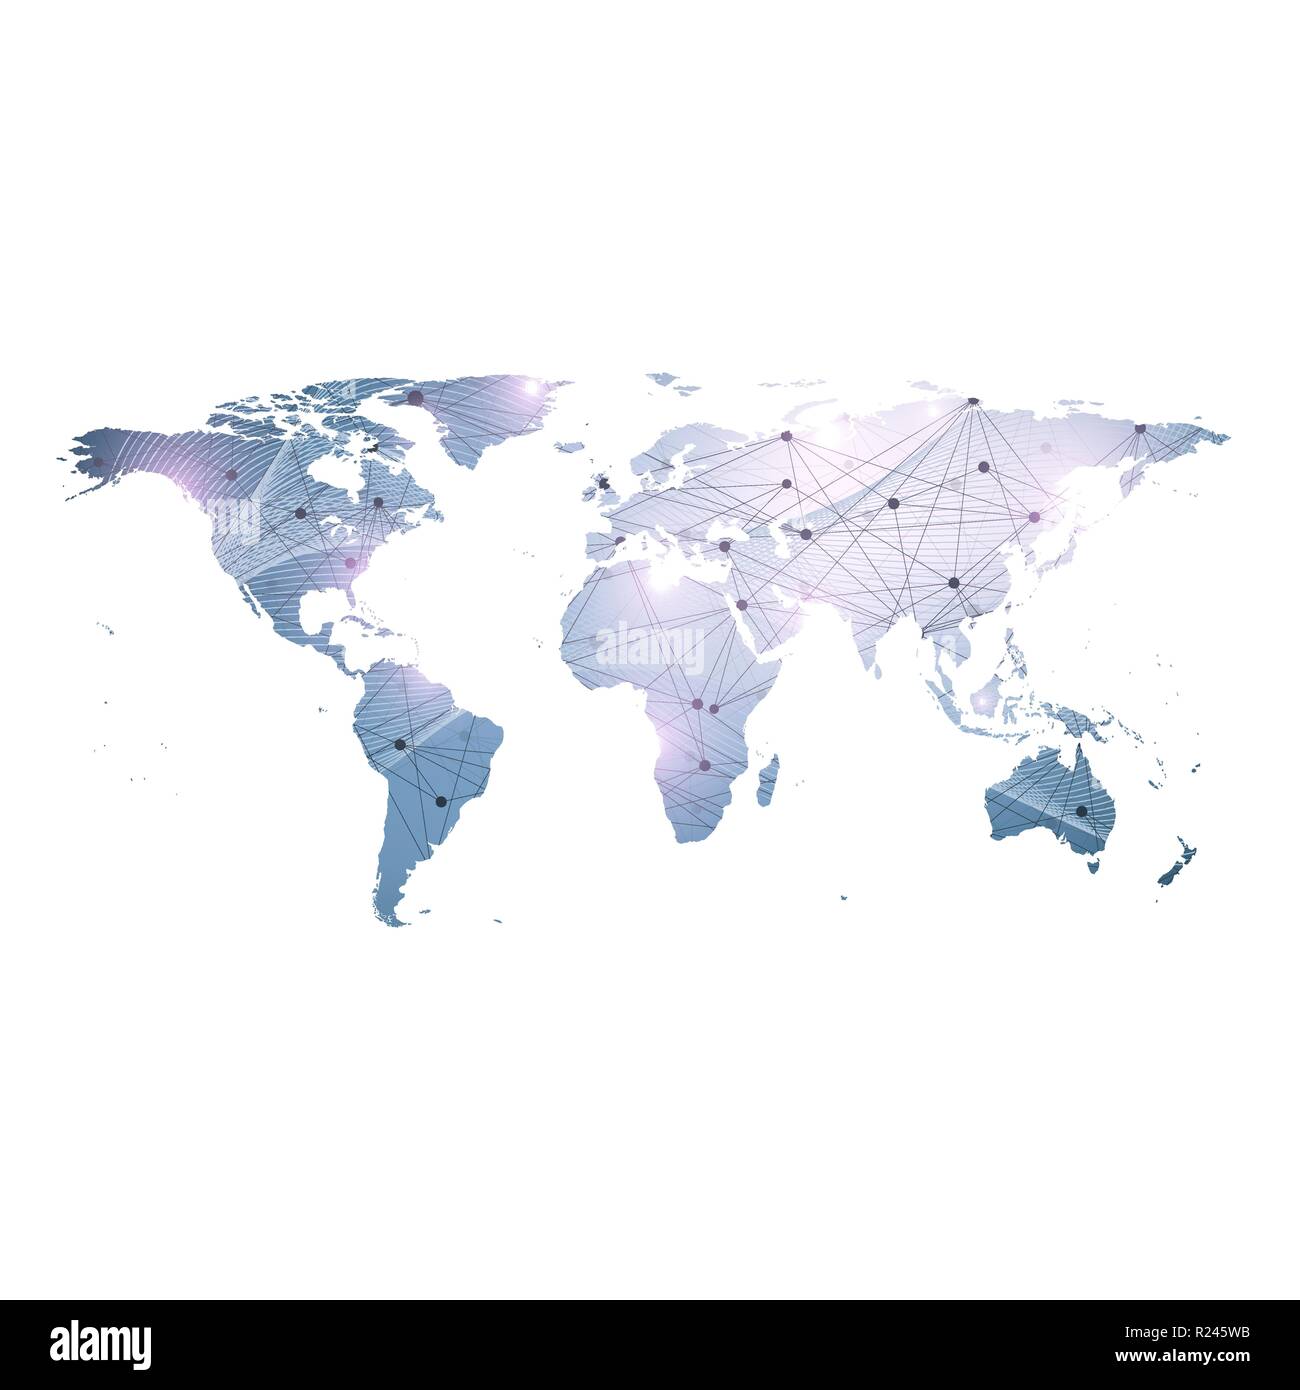 Modèle vectoriel carte du monde avec la technologie global concept de mise en réseau. Les connexions réseau. La visualisation de données numériques. Plexus lignes. Contexte Big Data communication. Toile de perspective Illustration de Vecteur